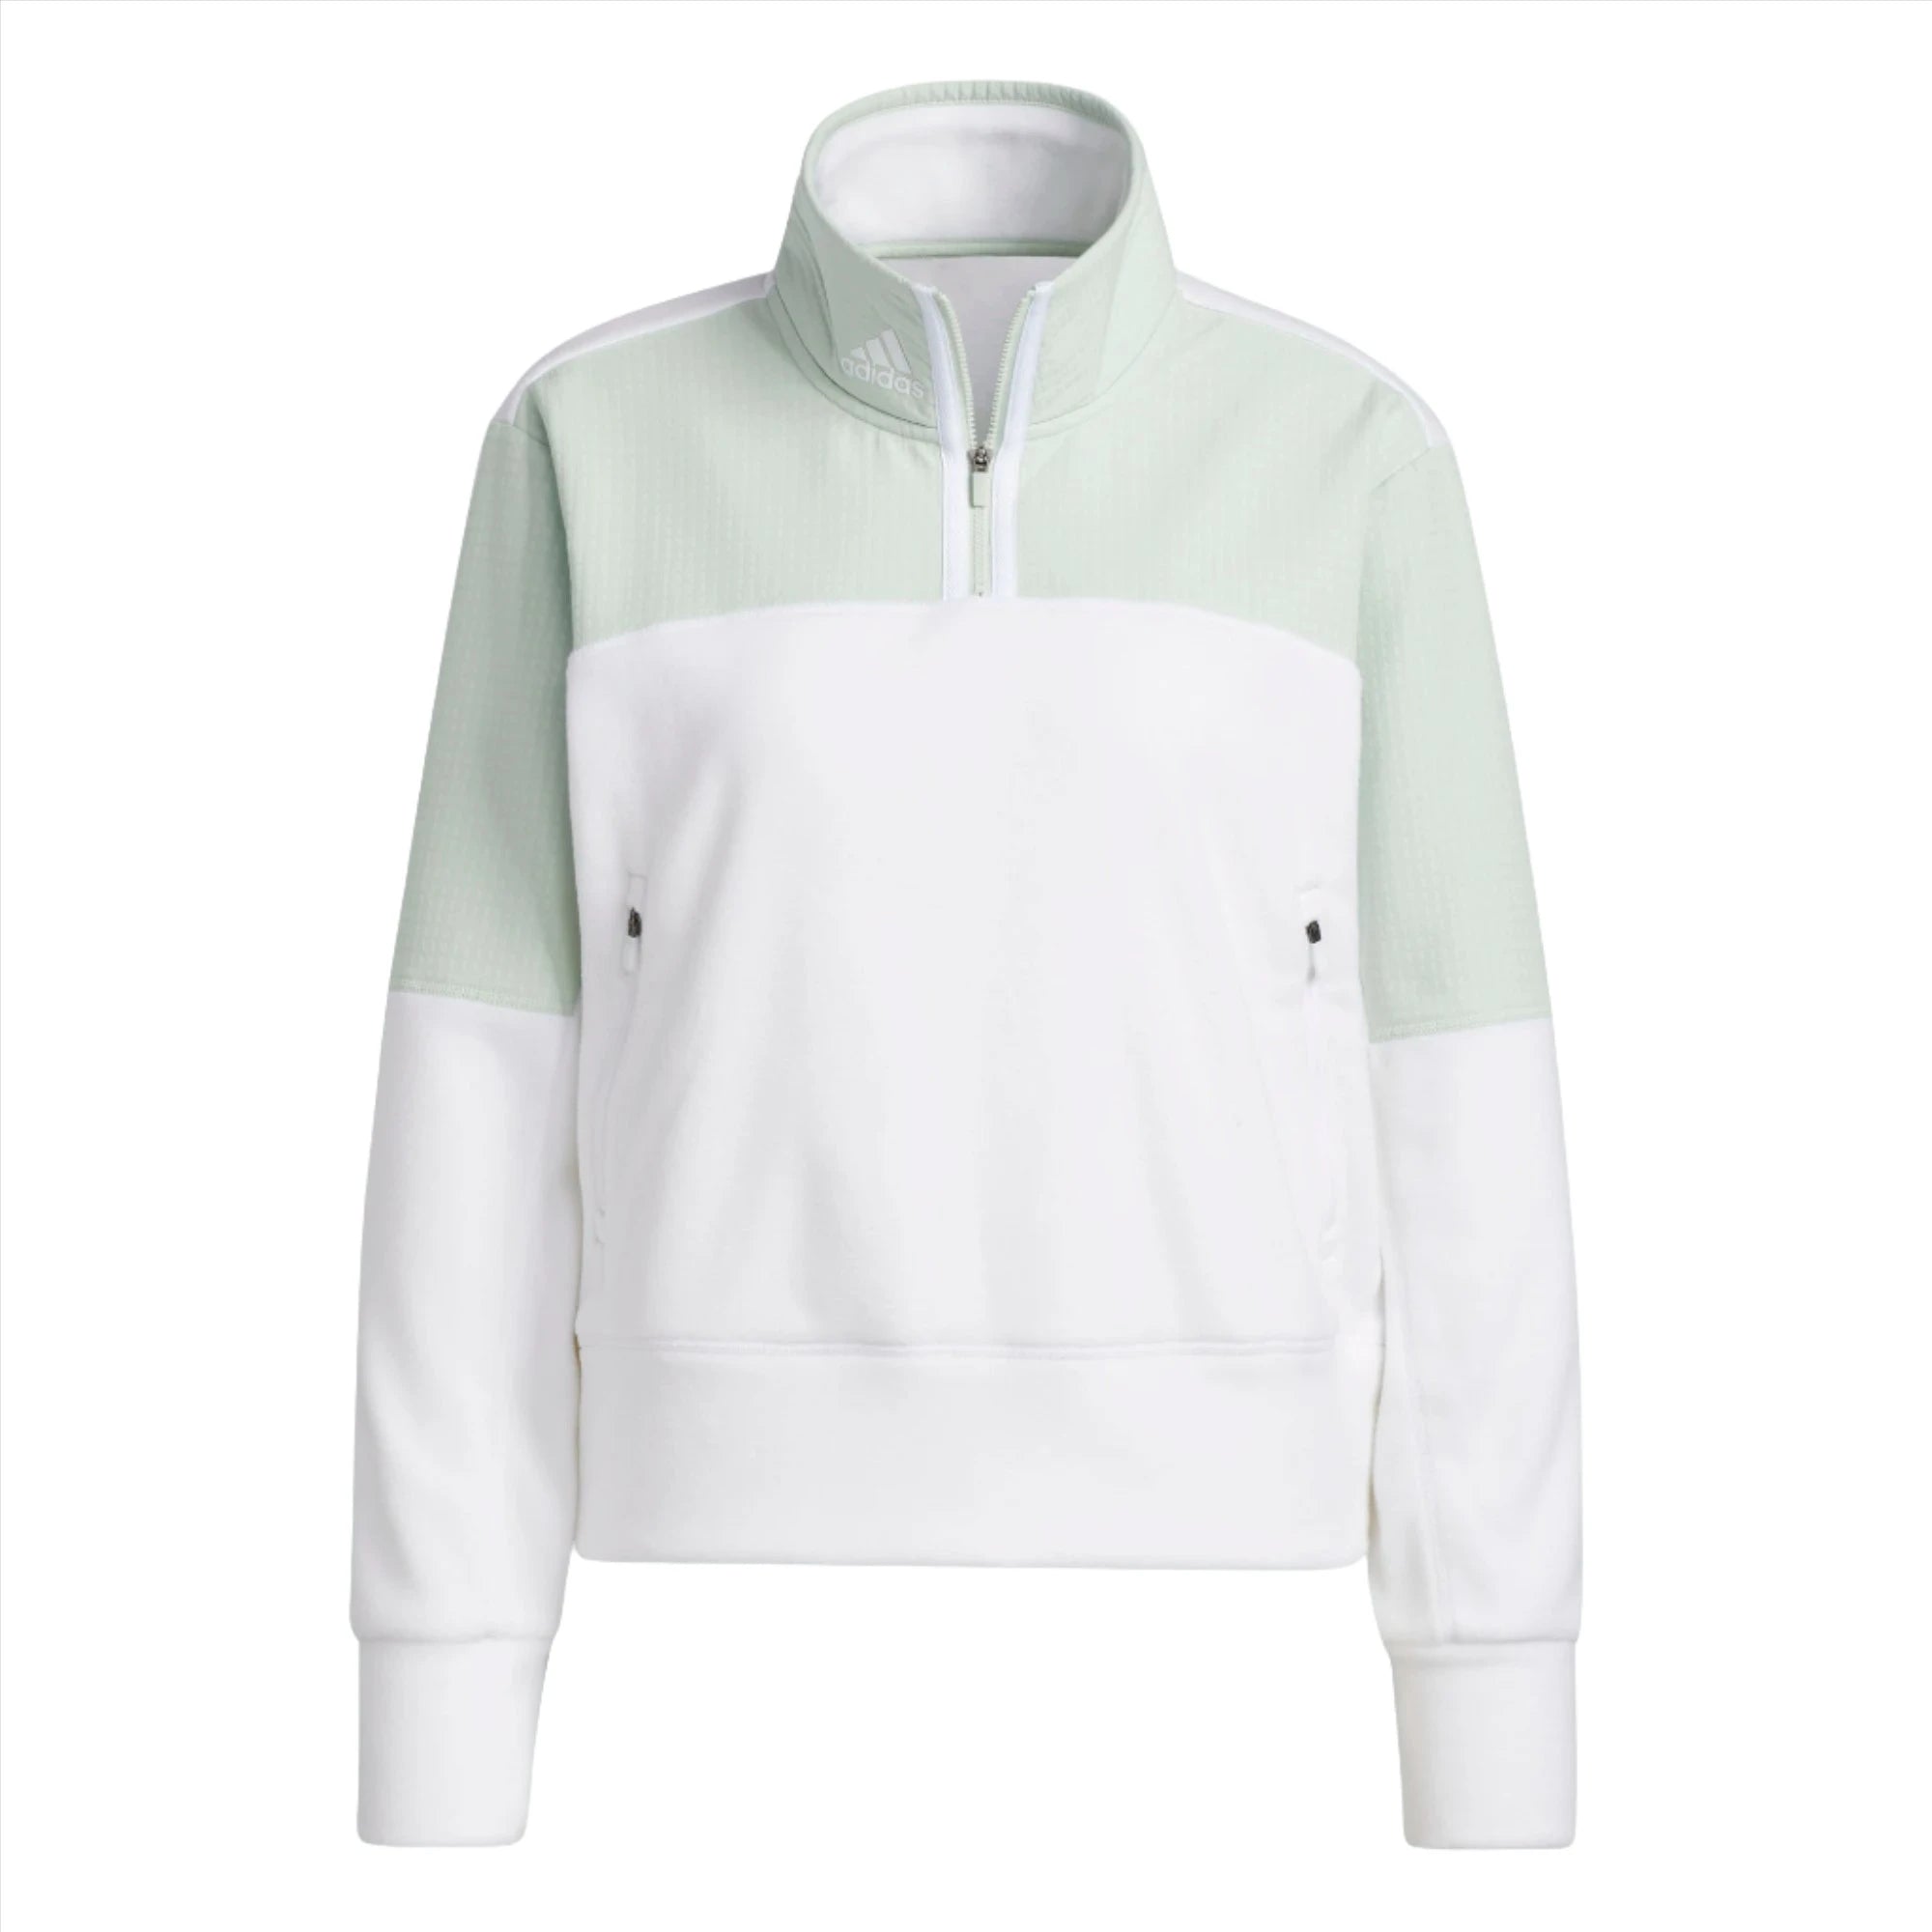 medeklinker Verdachte Keuze adidas Quarter Zip Fleece Golf Sweater | Online Golf Shop – Galaxy Golf